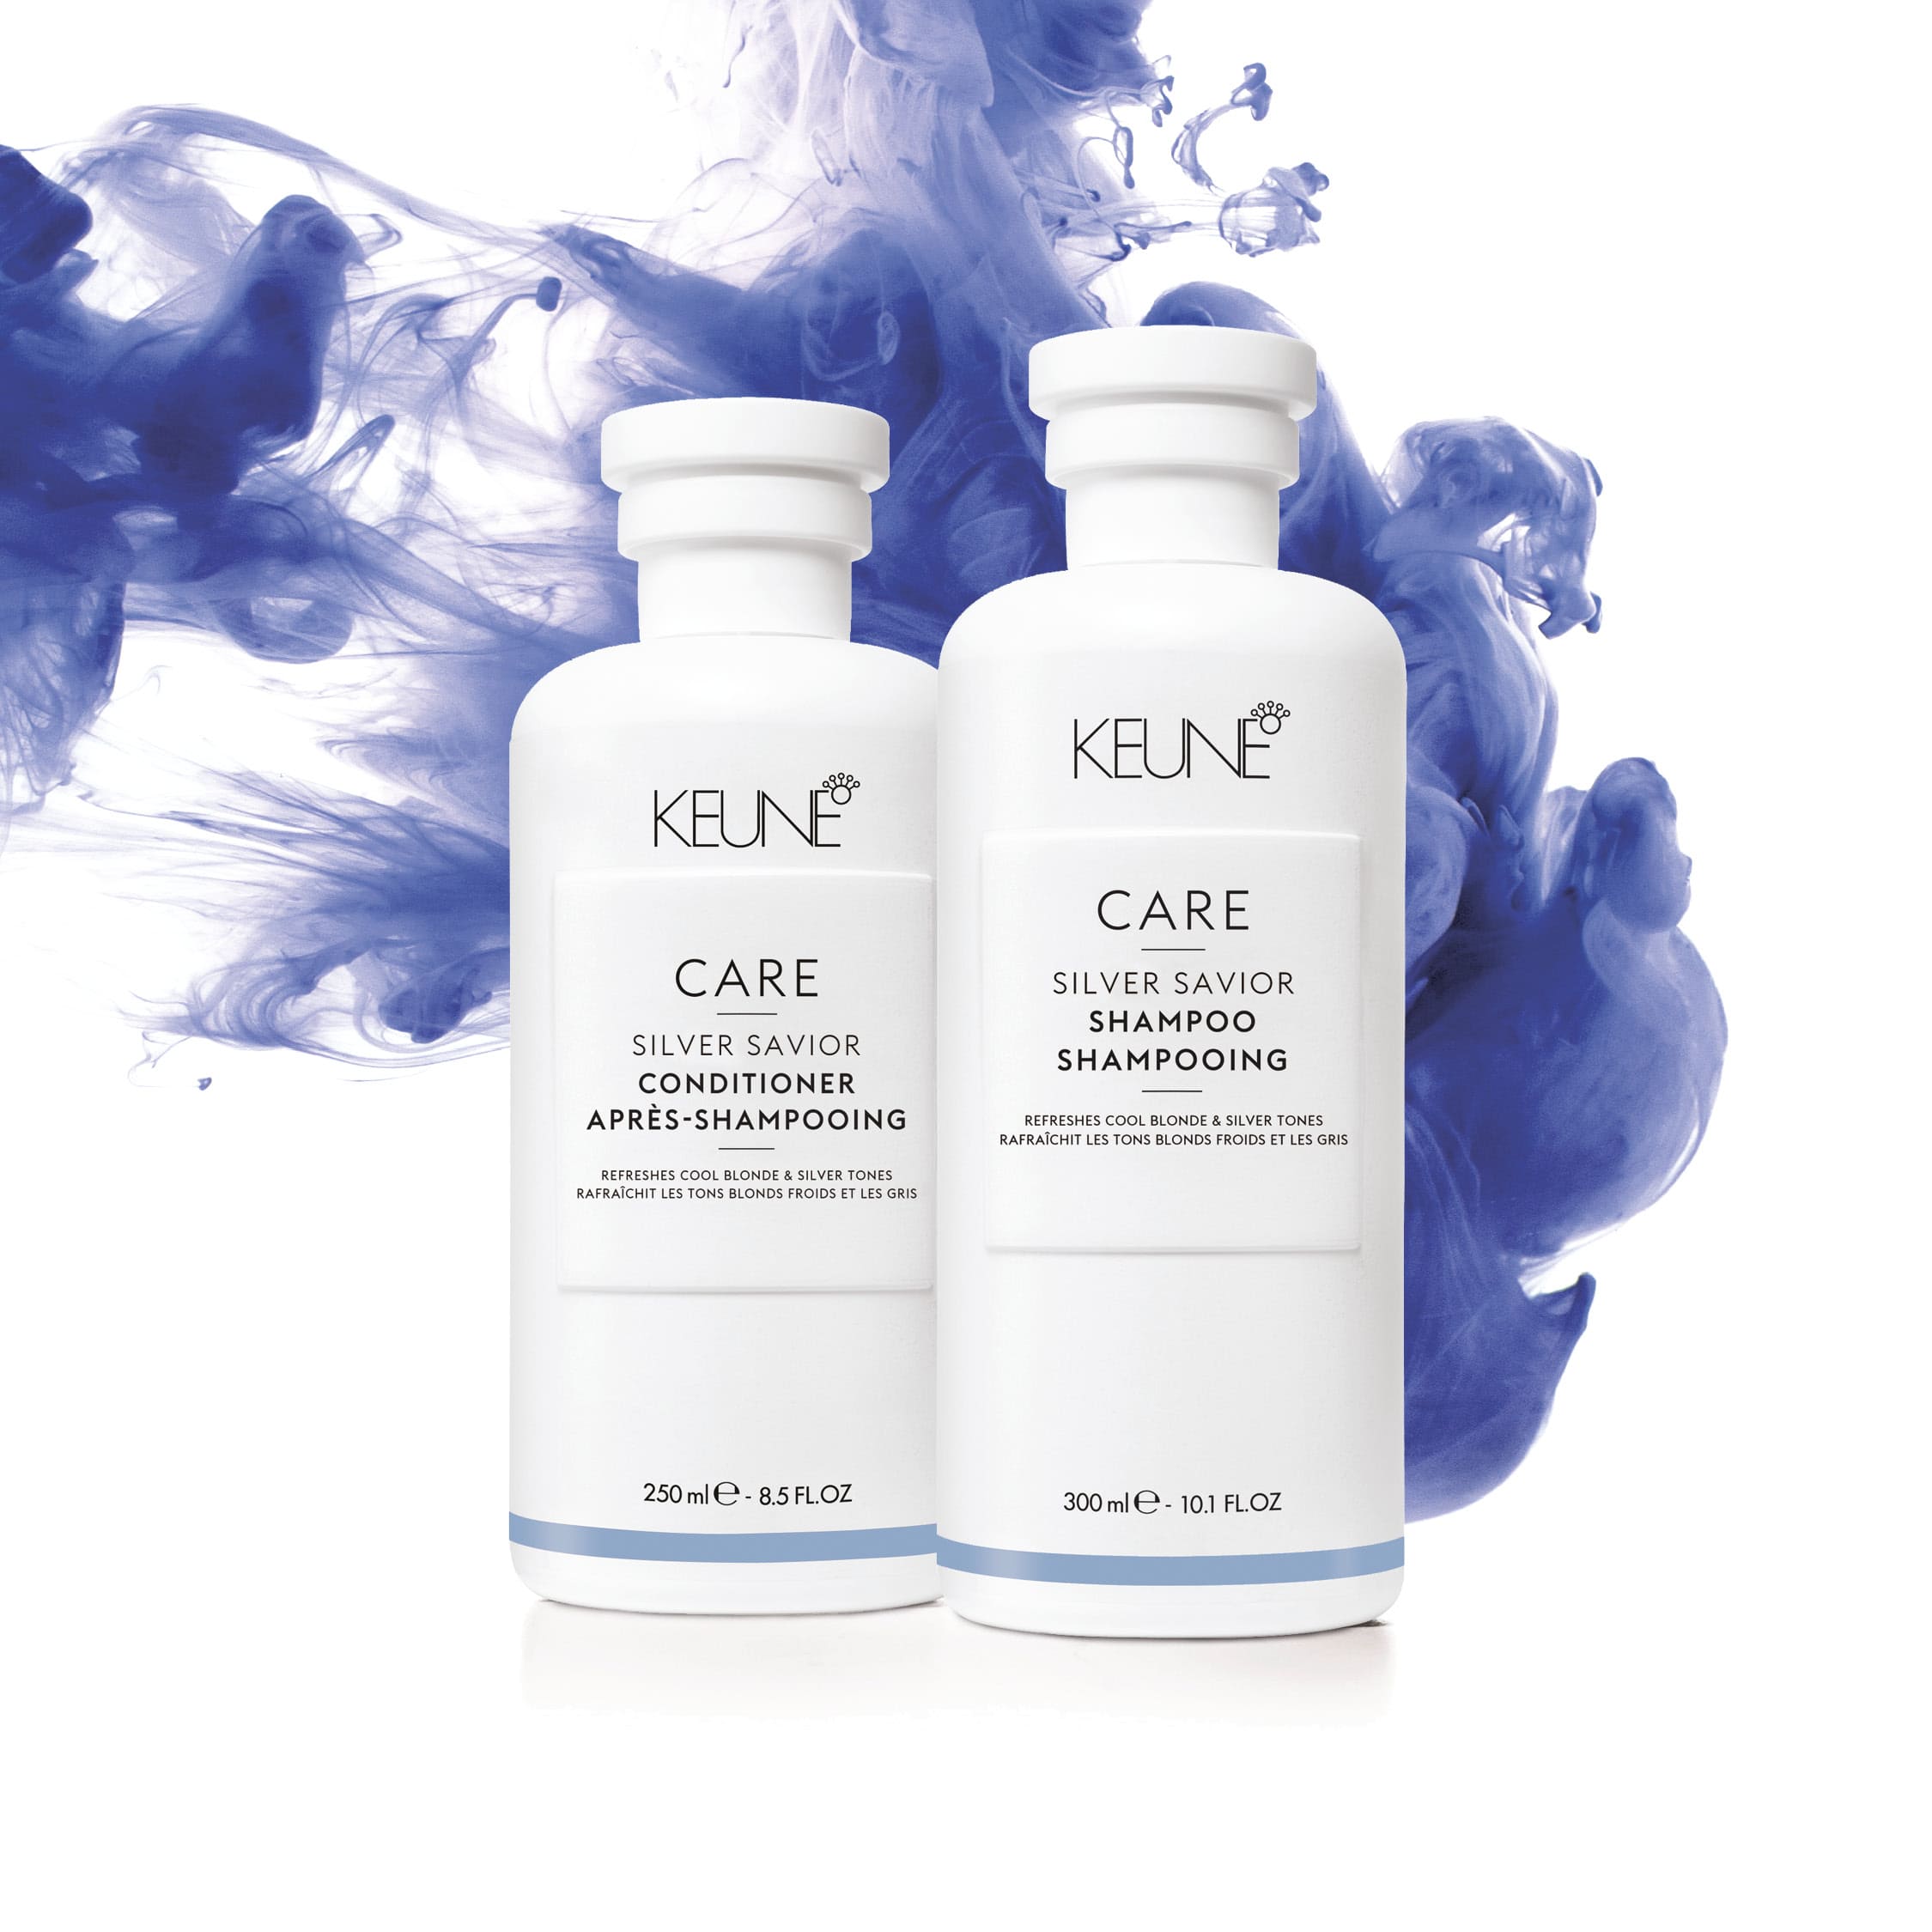 Keune Care Silver Savior Shampoo 300ml Keune.com